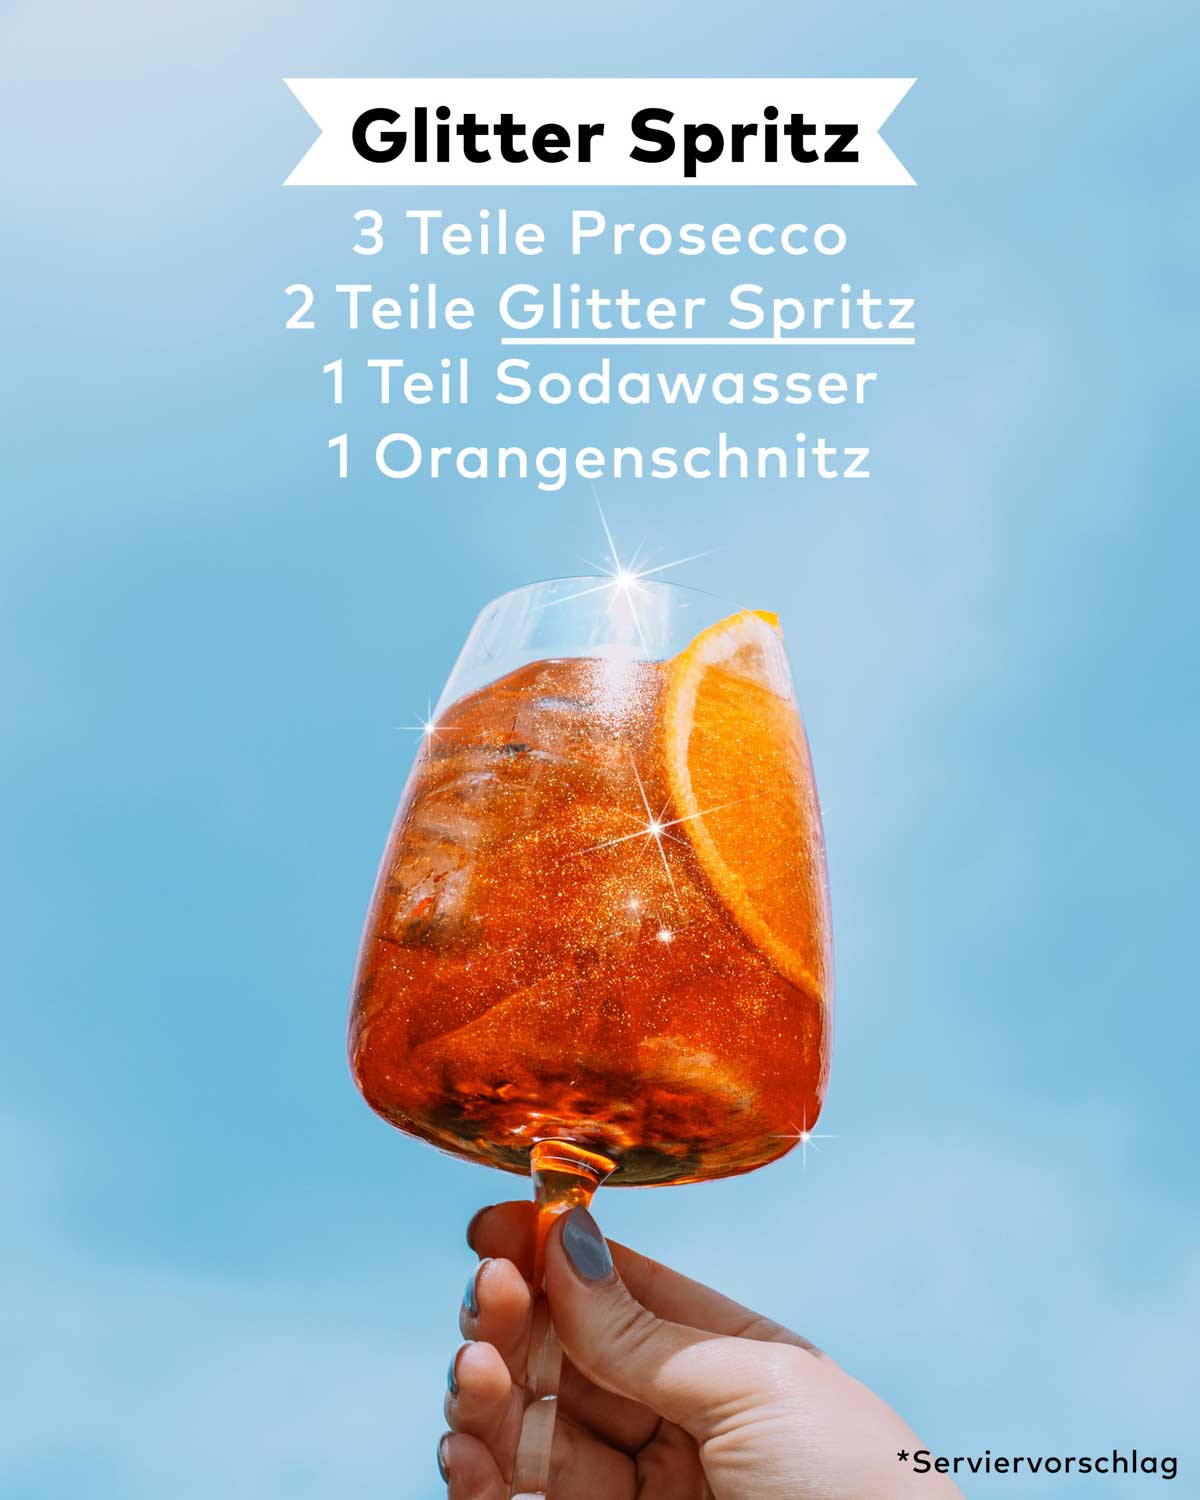 Unser Glitter Spritz verpasst deinem Getränk das gewisse Etwas mit seinem funkelnden Glitzer- Effekt. Die Zubereitung ist ganz simpel: Einfach 3 Teile Prosecco, 2 Teile Glitter Spritz, 1 Teil Sodawasser und ein Orangenschlitz kombinieren.